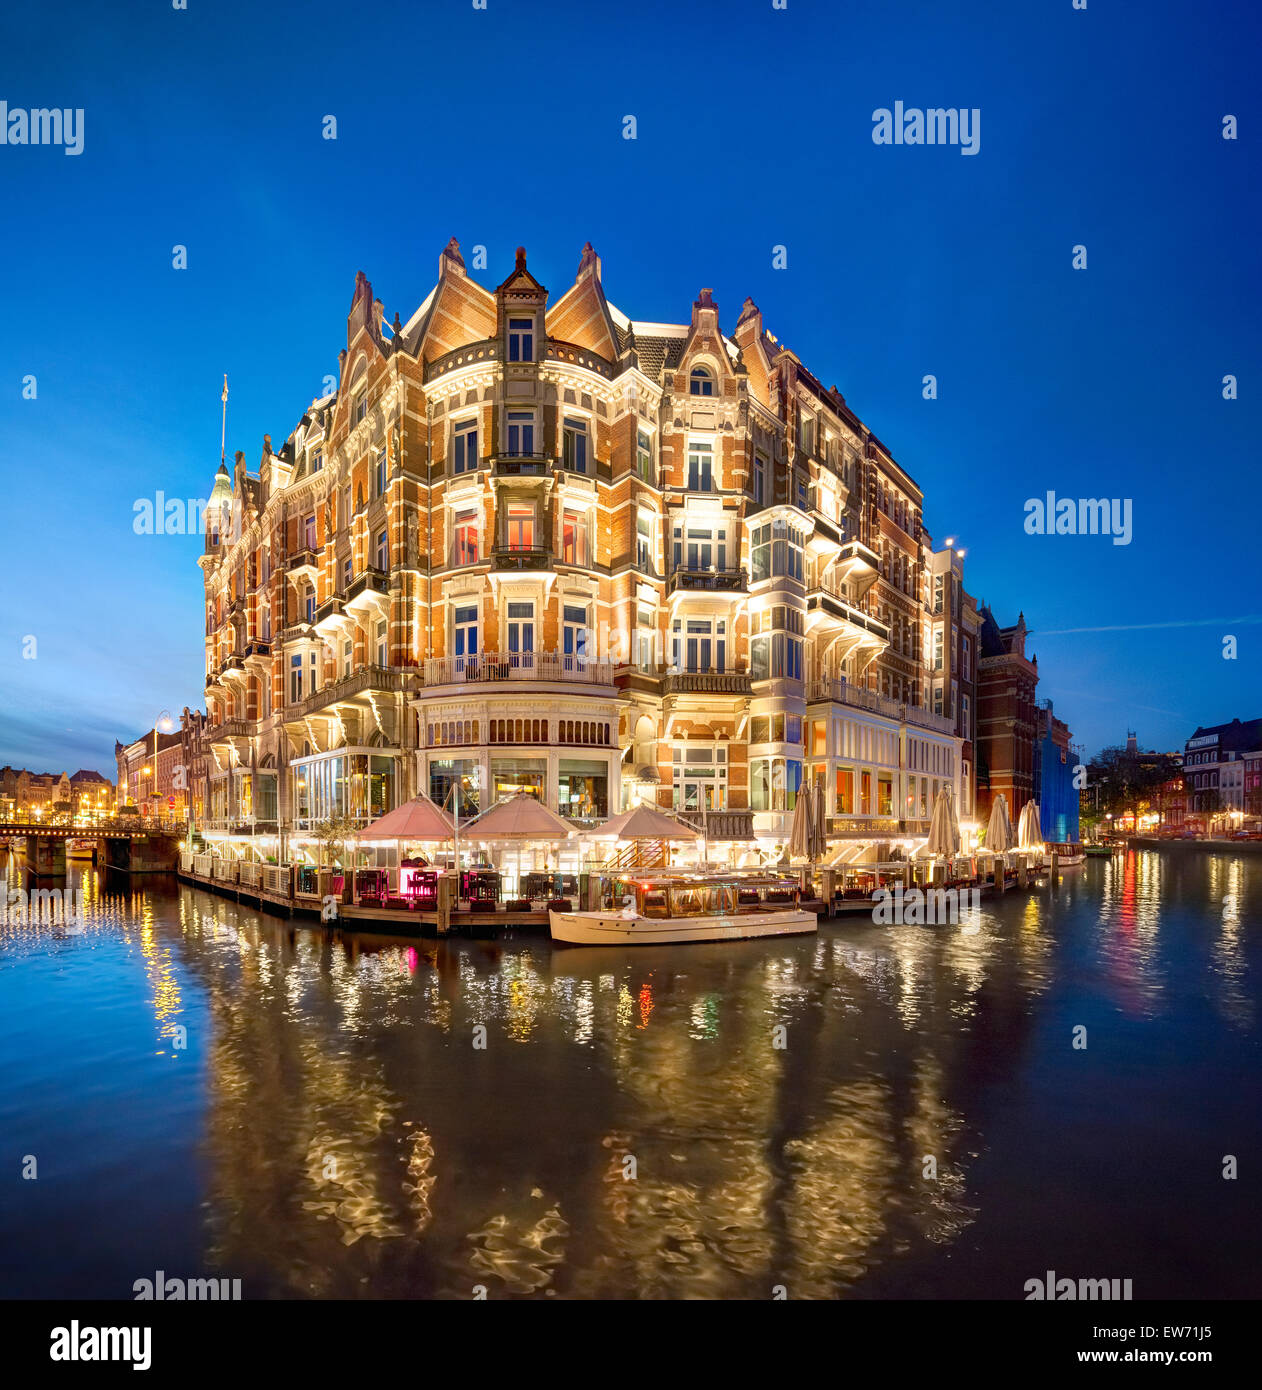 Amsterdam Hotel de l'Europe sur l'angle de la rivière Amstel et Rokin canal. Hôtel 5 étoiles historique dans un bâtiment romantique. Banque D'Images